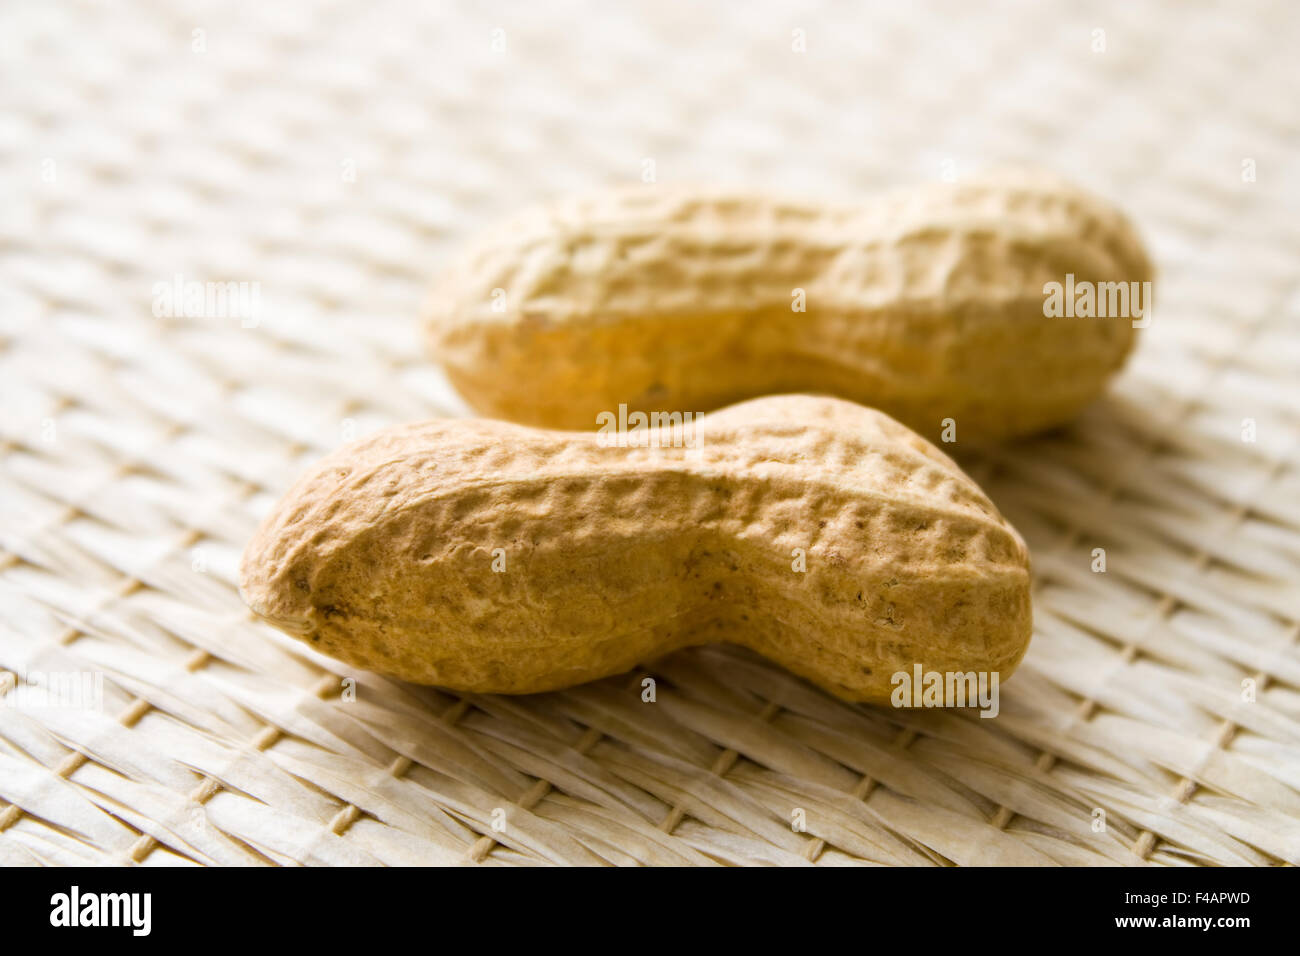 Erdnüsse - Peanuts Stock Photo